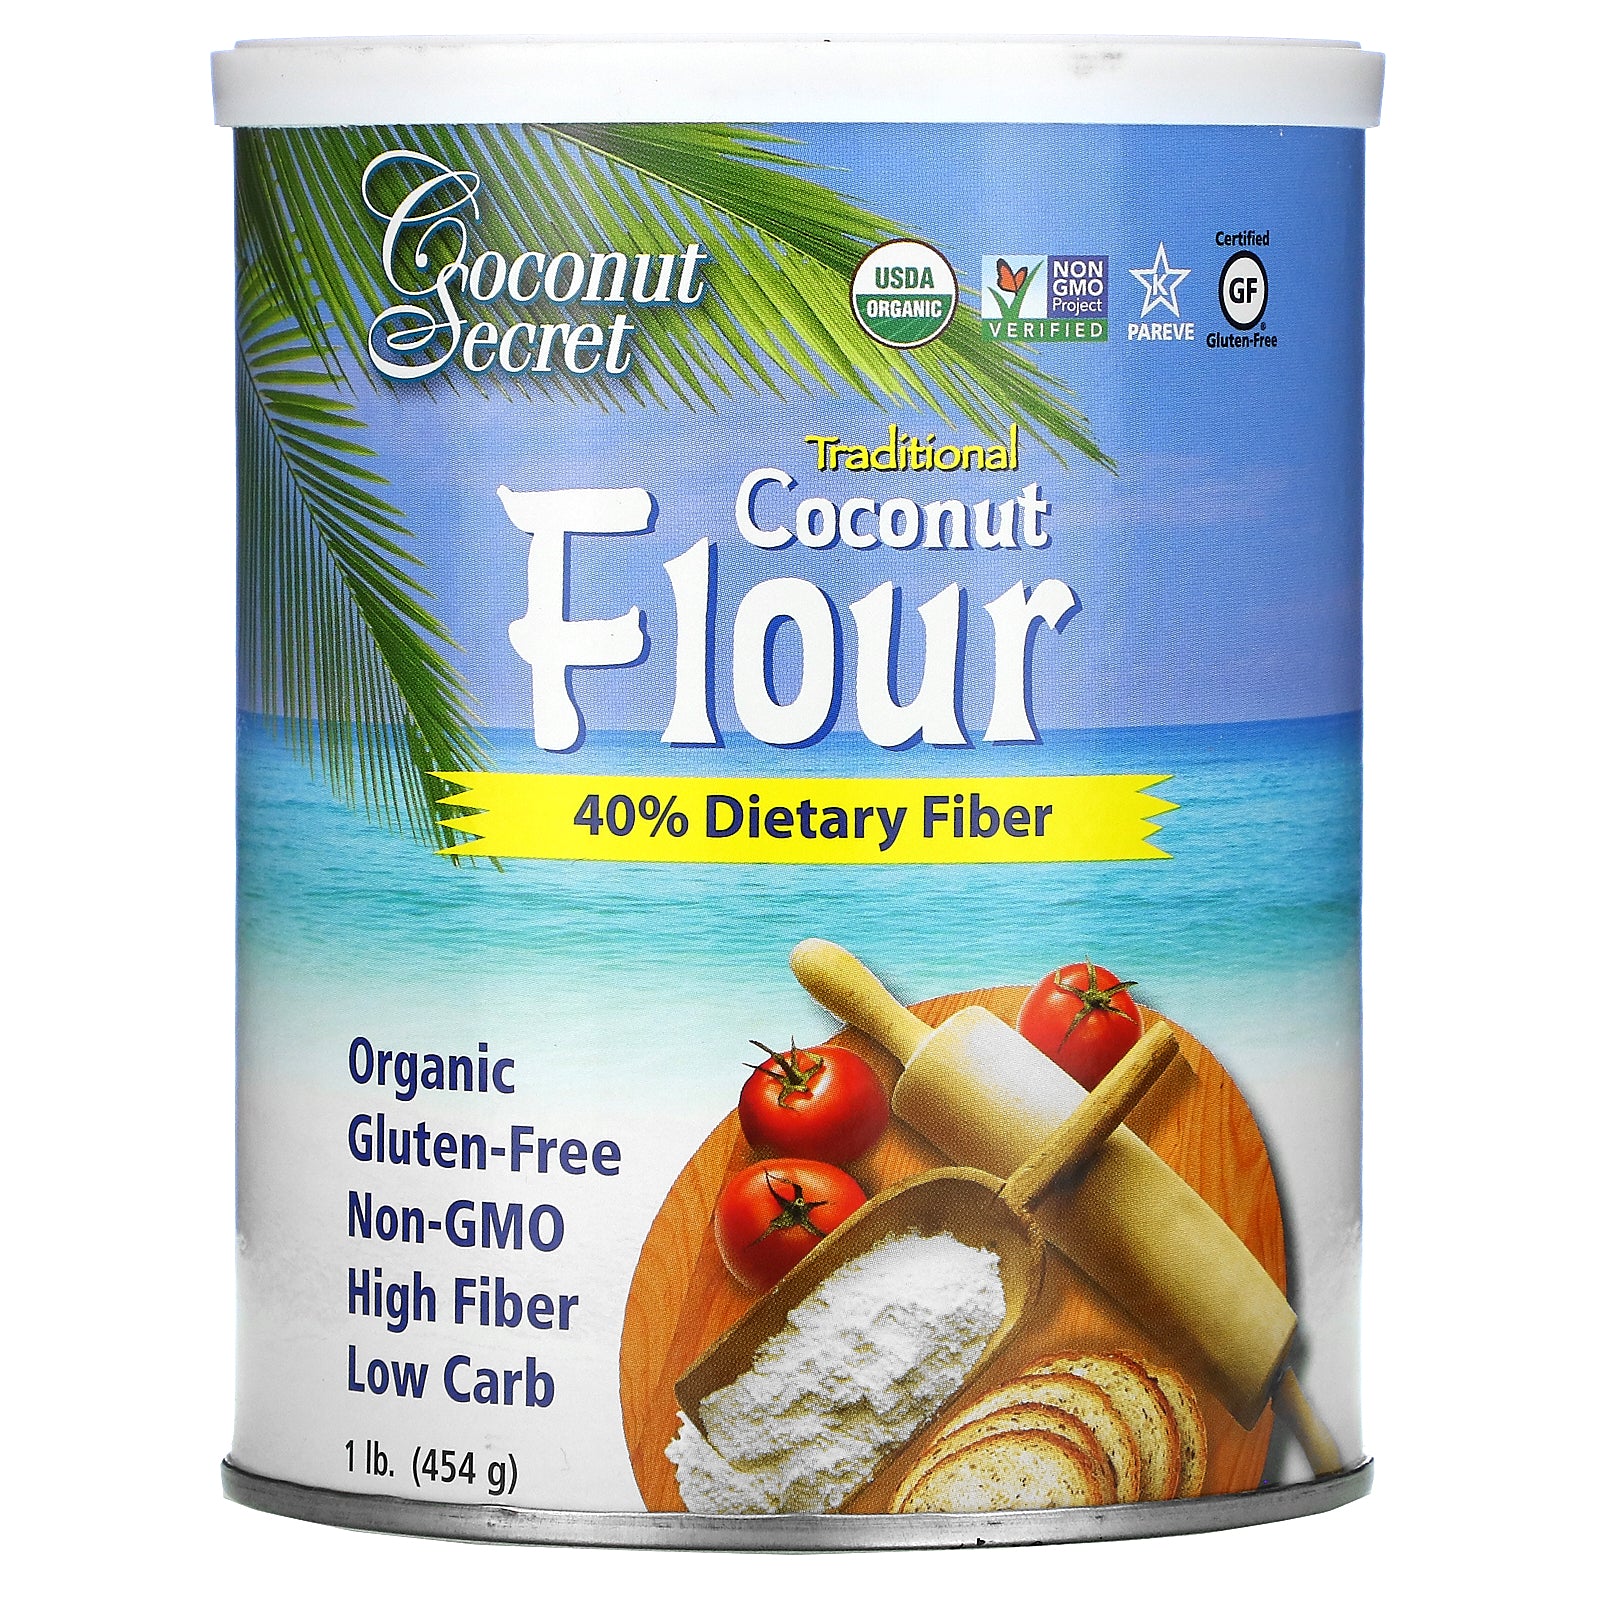 Coconut Secret, Traditional Coconut Flour, 1 lb (454 g)